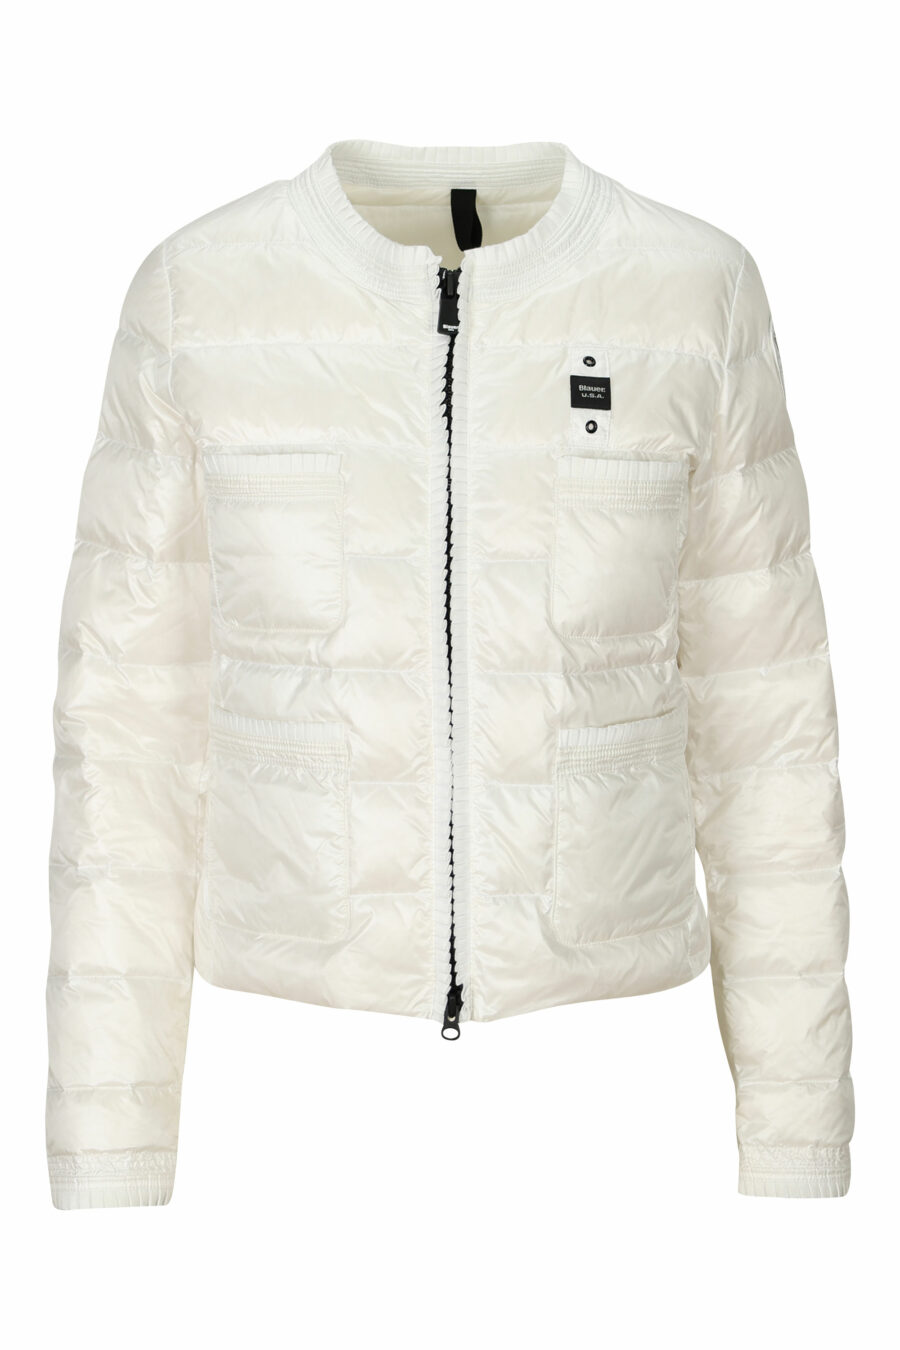 Weiße Jacke mit geraden Linien und seitlichem Logoaufnäher - 8058610764784